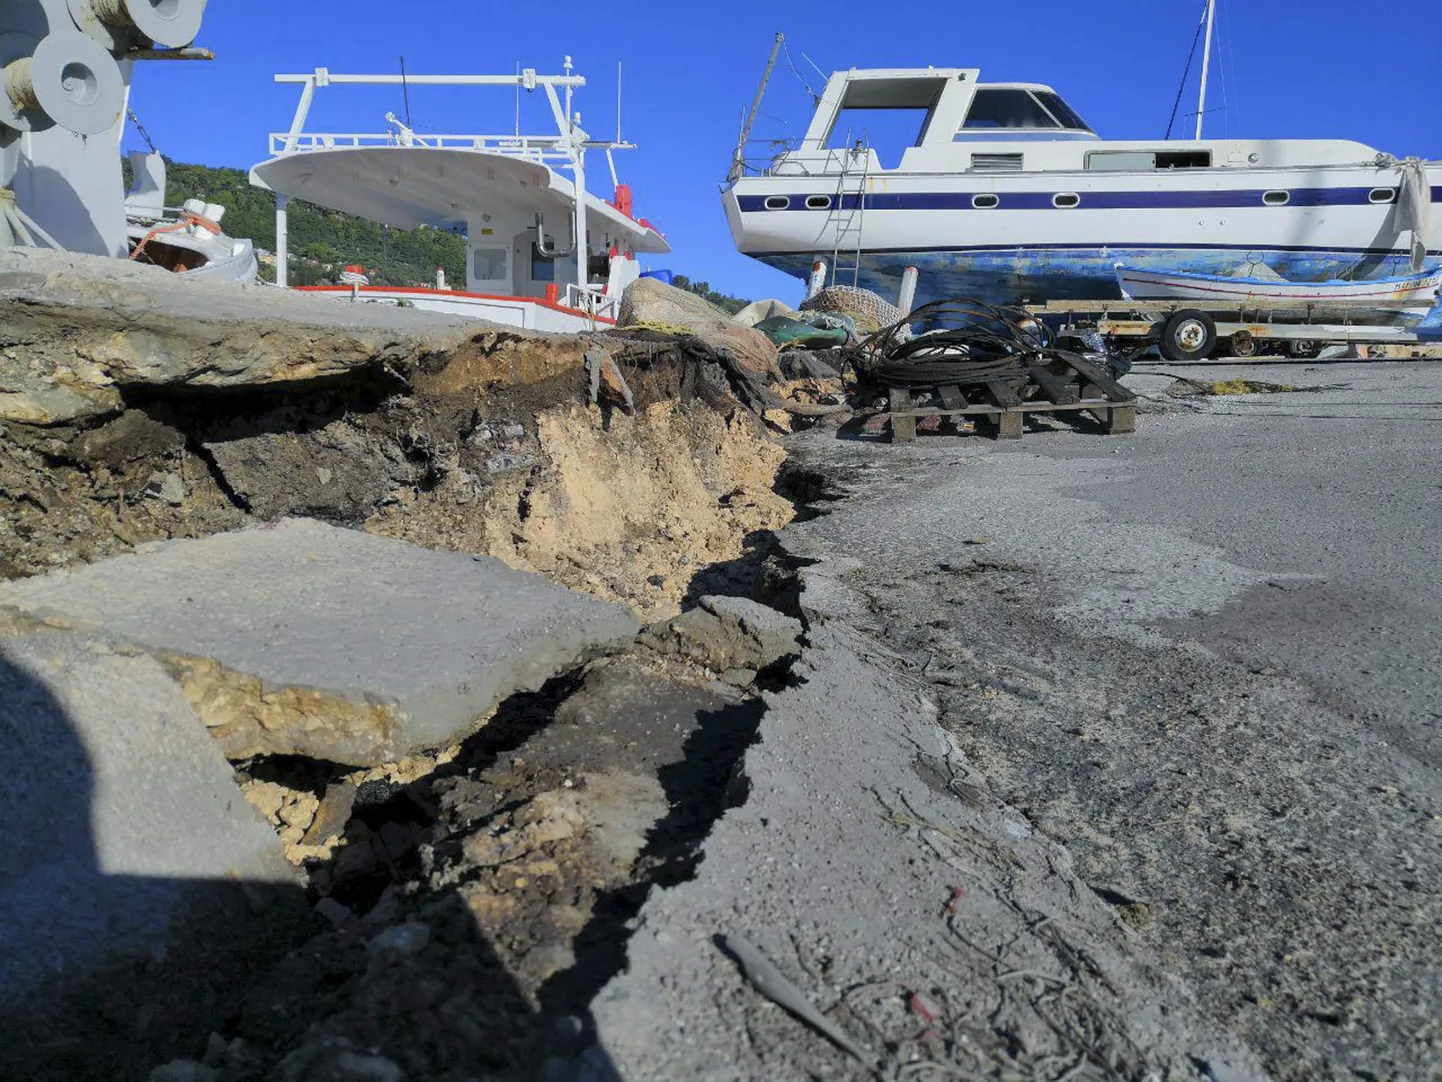 Maavärin põhjustas purustusi turistide seas populaarsel Zákynthose saarel. Pilt on antud artiklit illustreeriv.